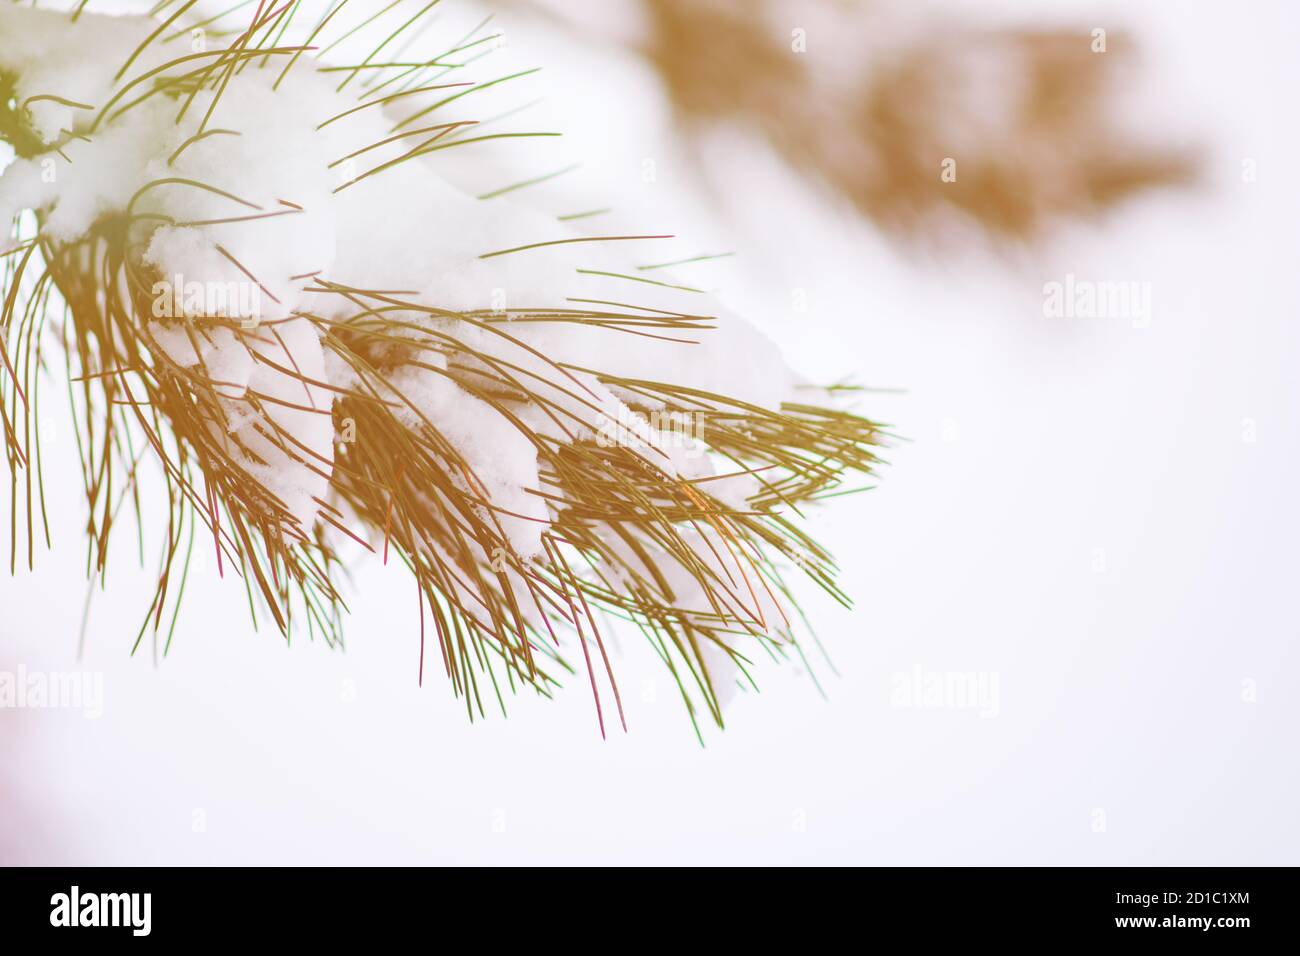 Bella struttura d'inverno. Close up dettagli su aghi di pino brunch ricoperta di neve a fredda stagione invernale. Foto Stock